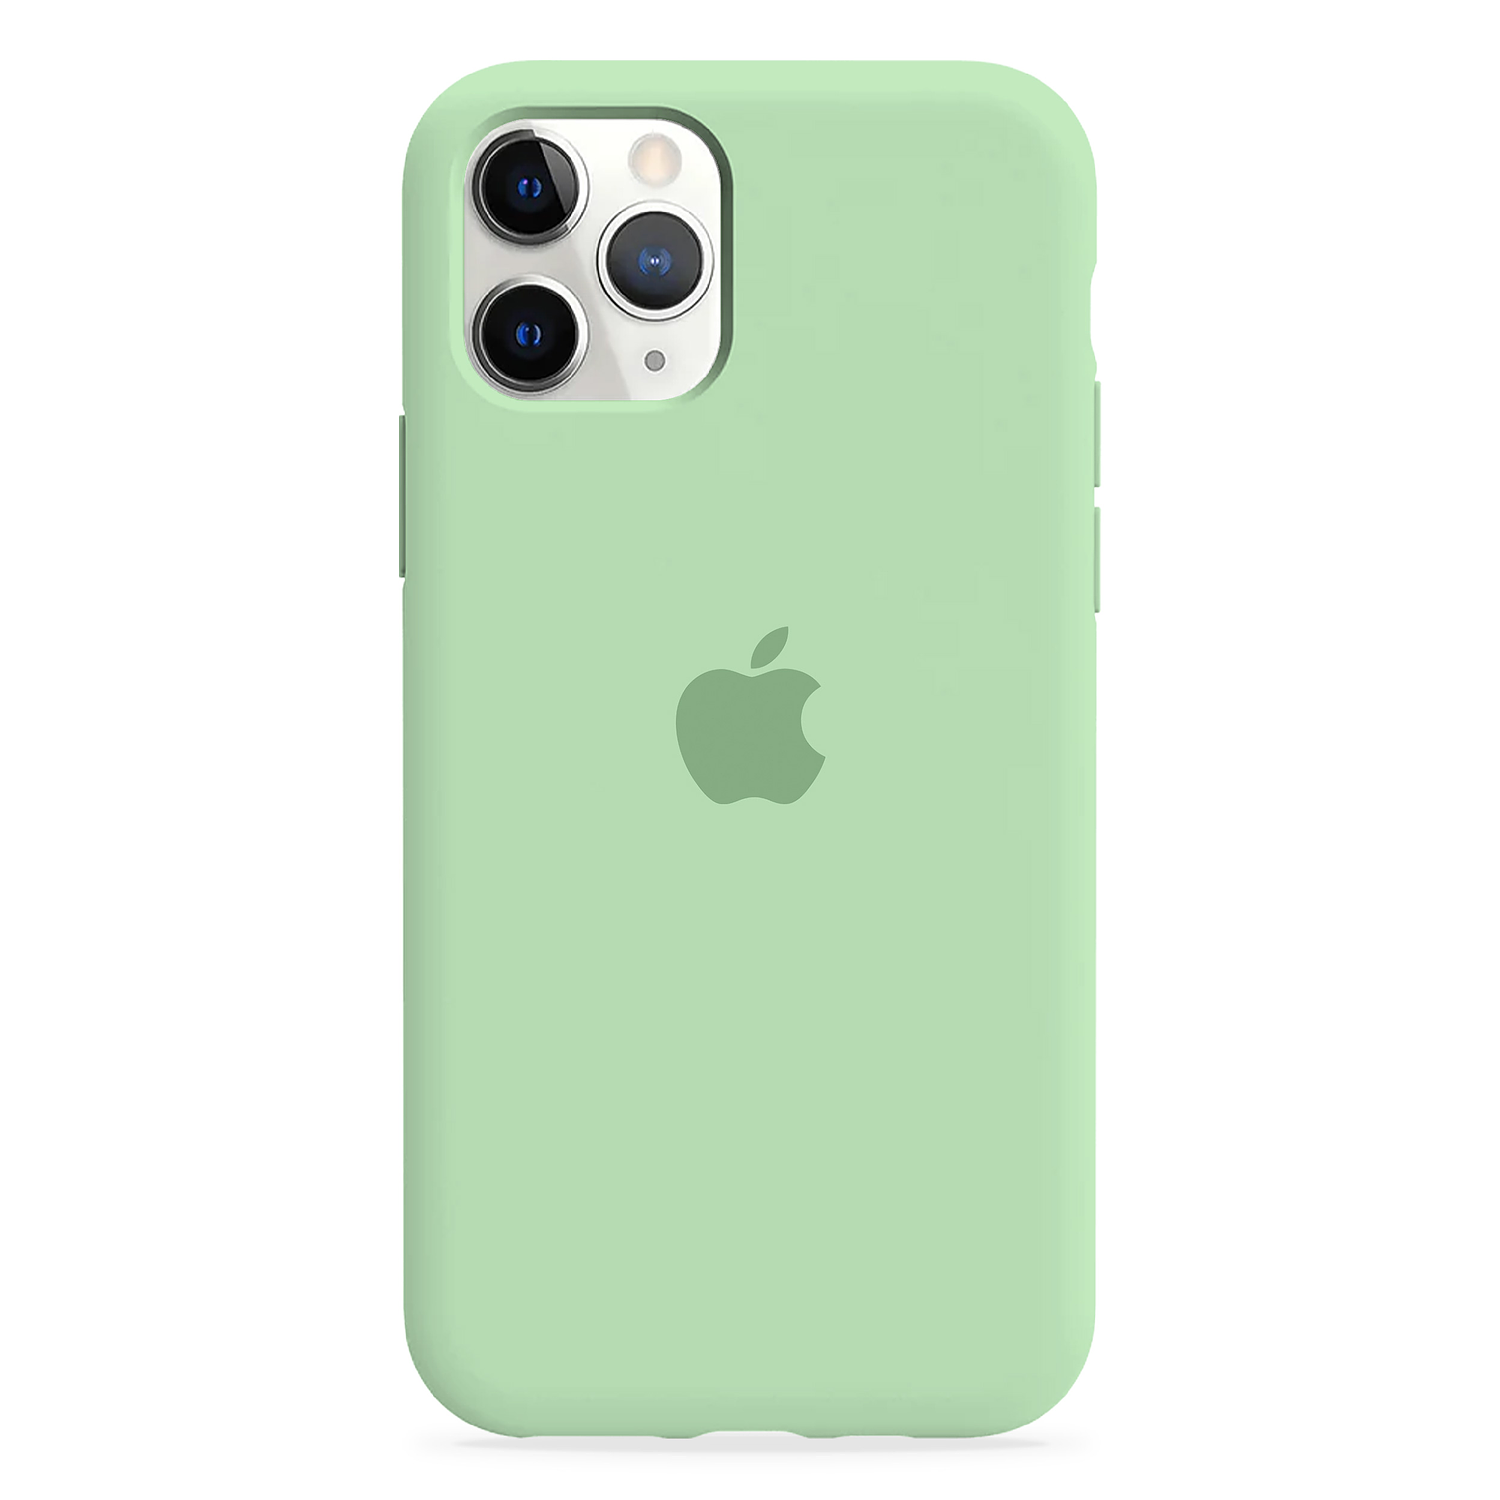 Carcasa de Silicona - iPhone 11 Pro Max 1